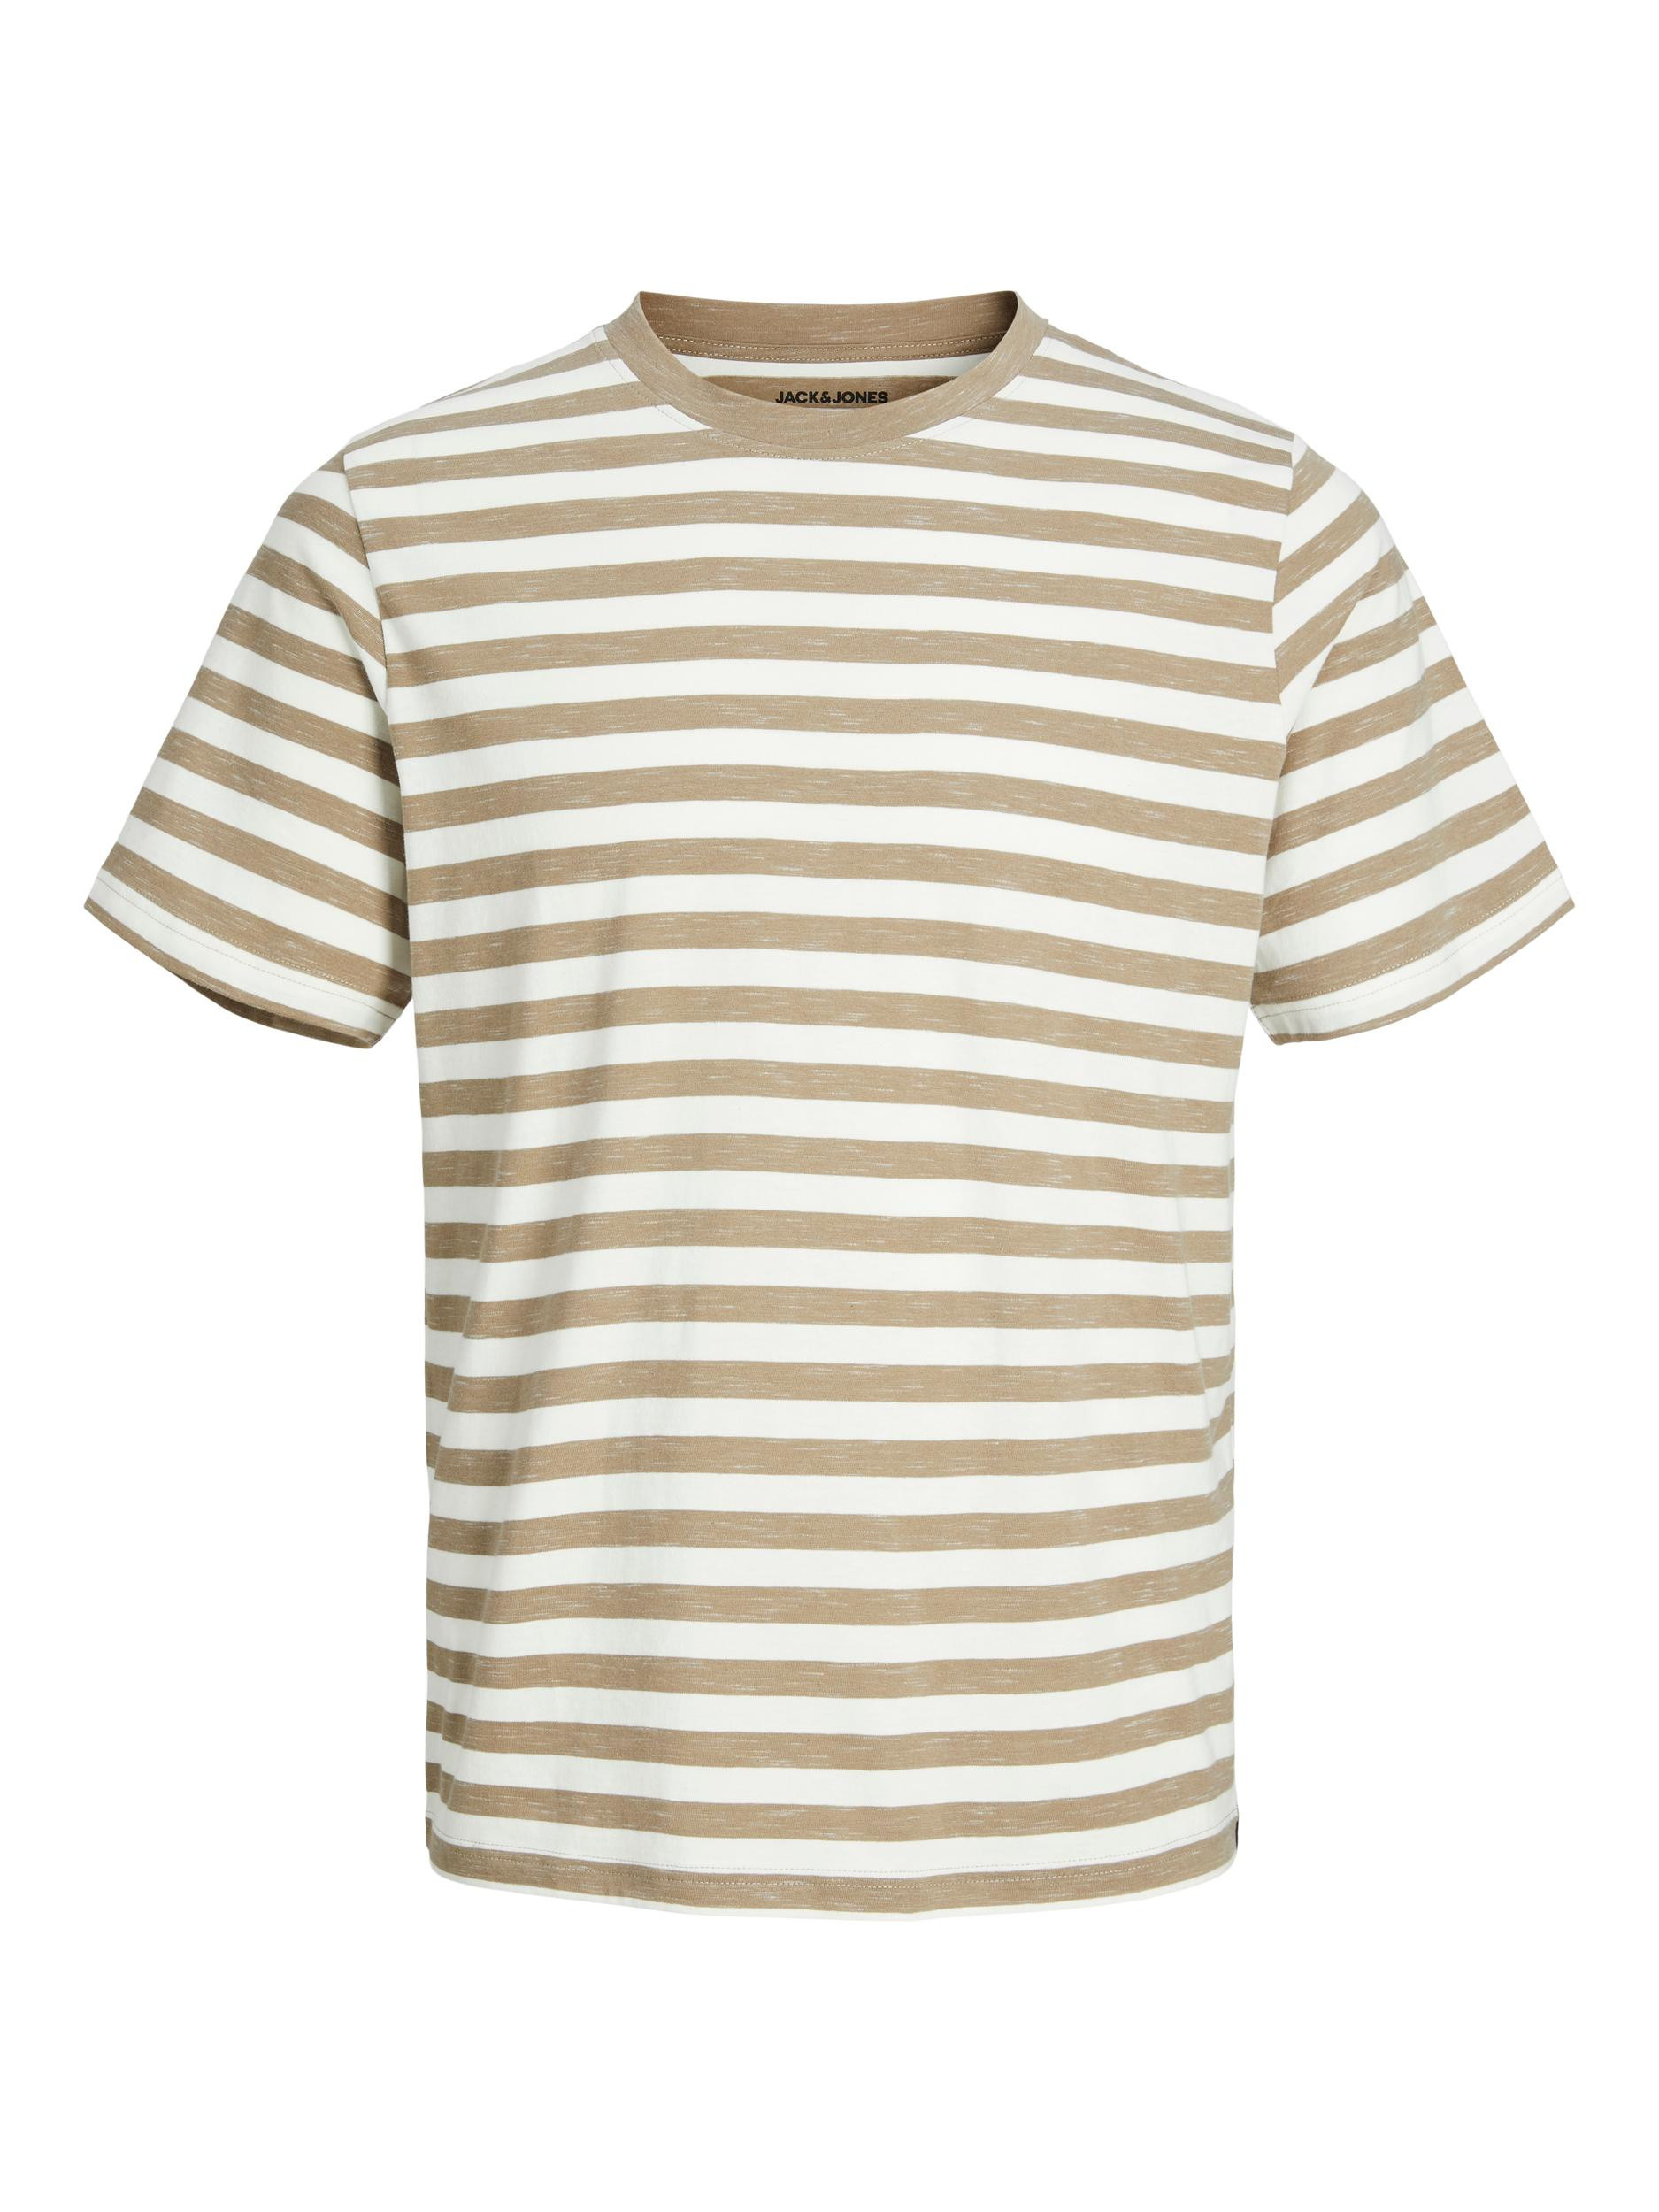 Jack & Jones - Striped T-Shirt, Beige, large image number 0